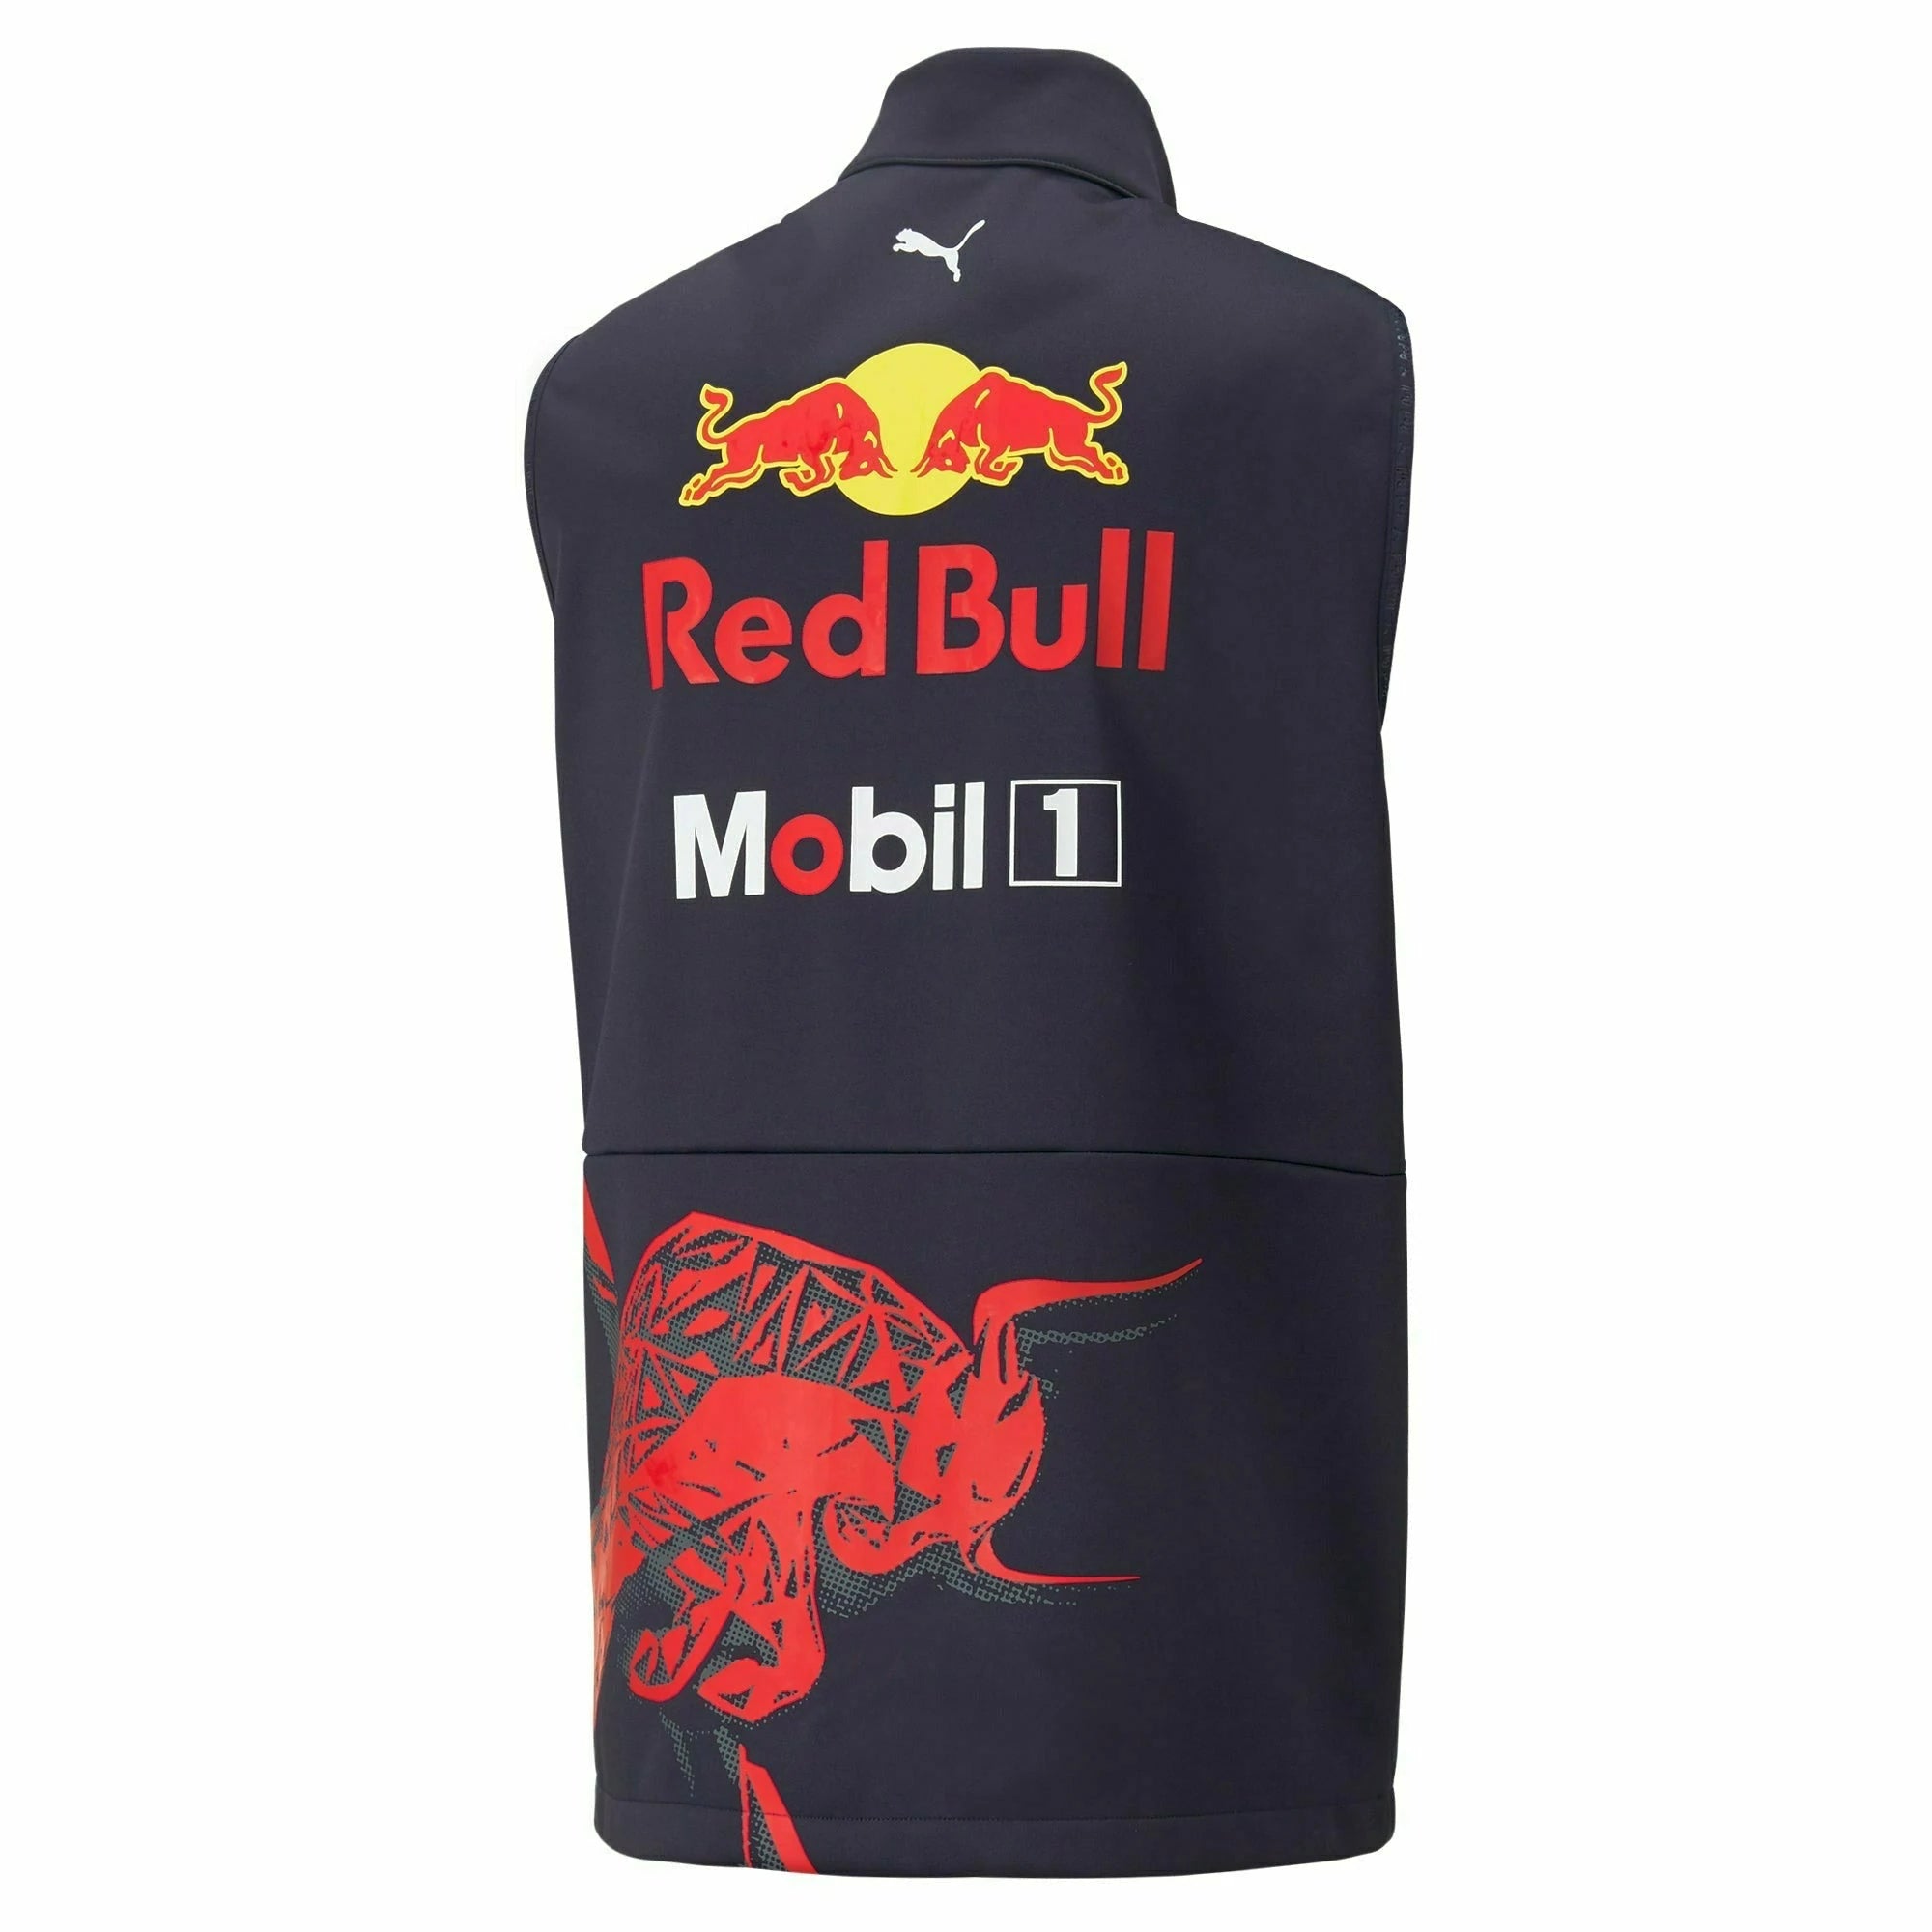 Red Bull Racing F1 Men's Team Vest Navy